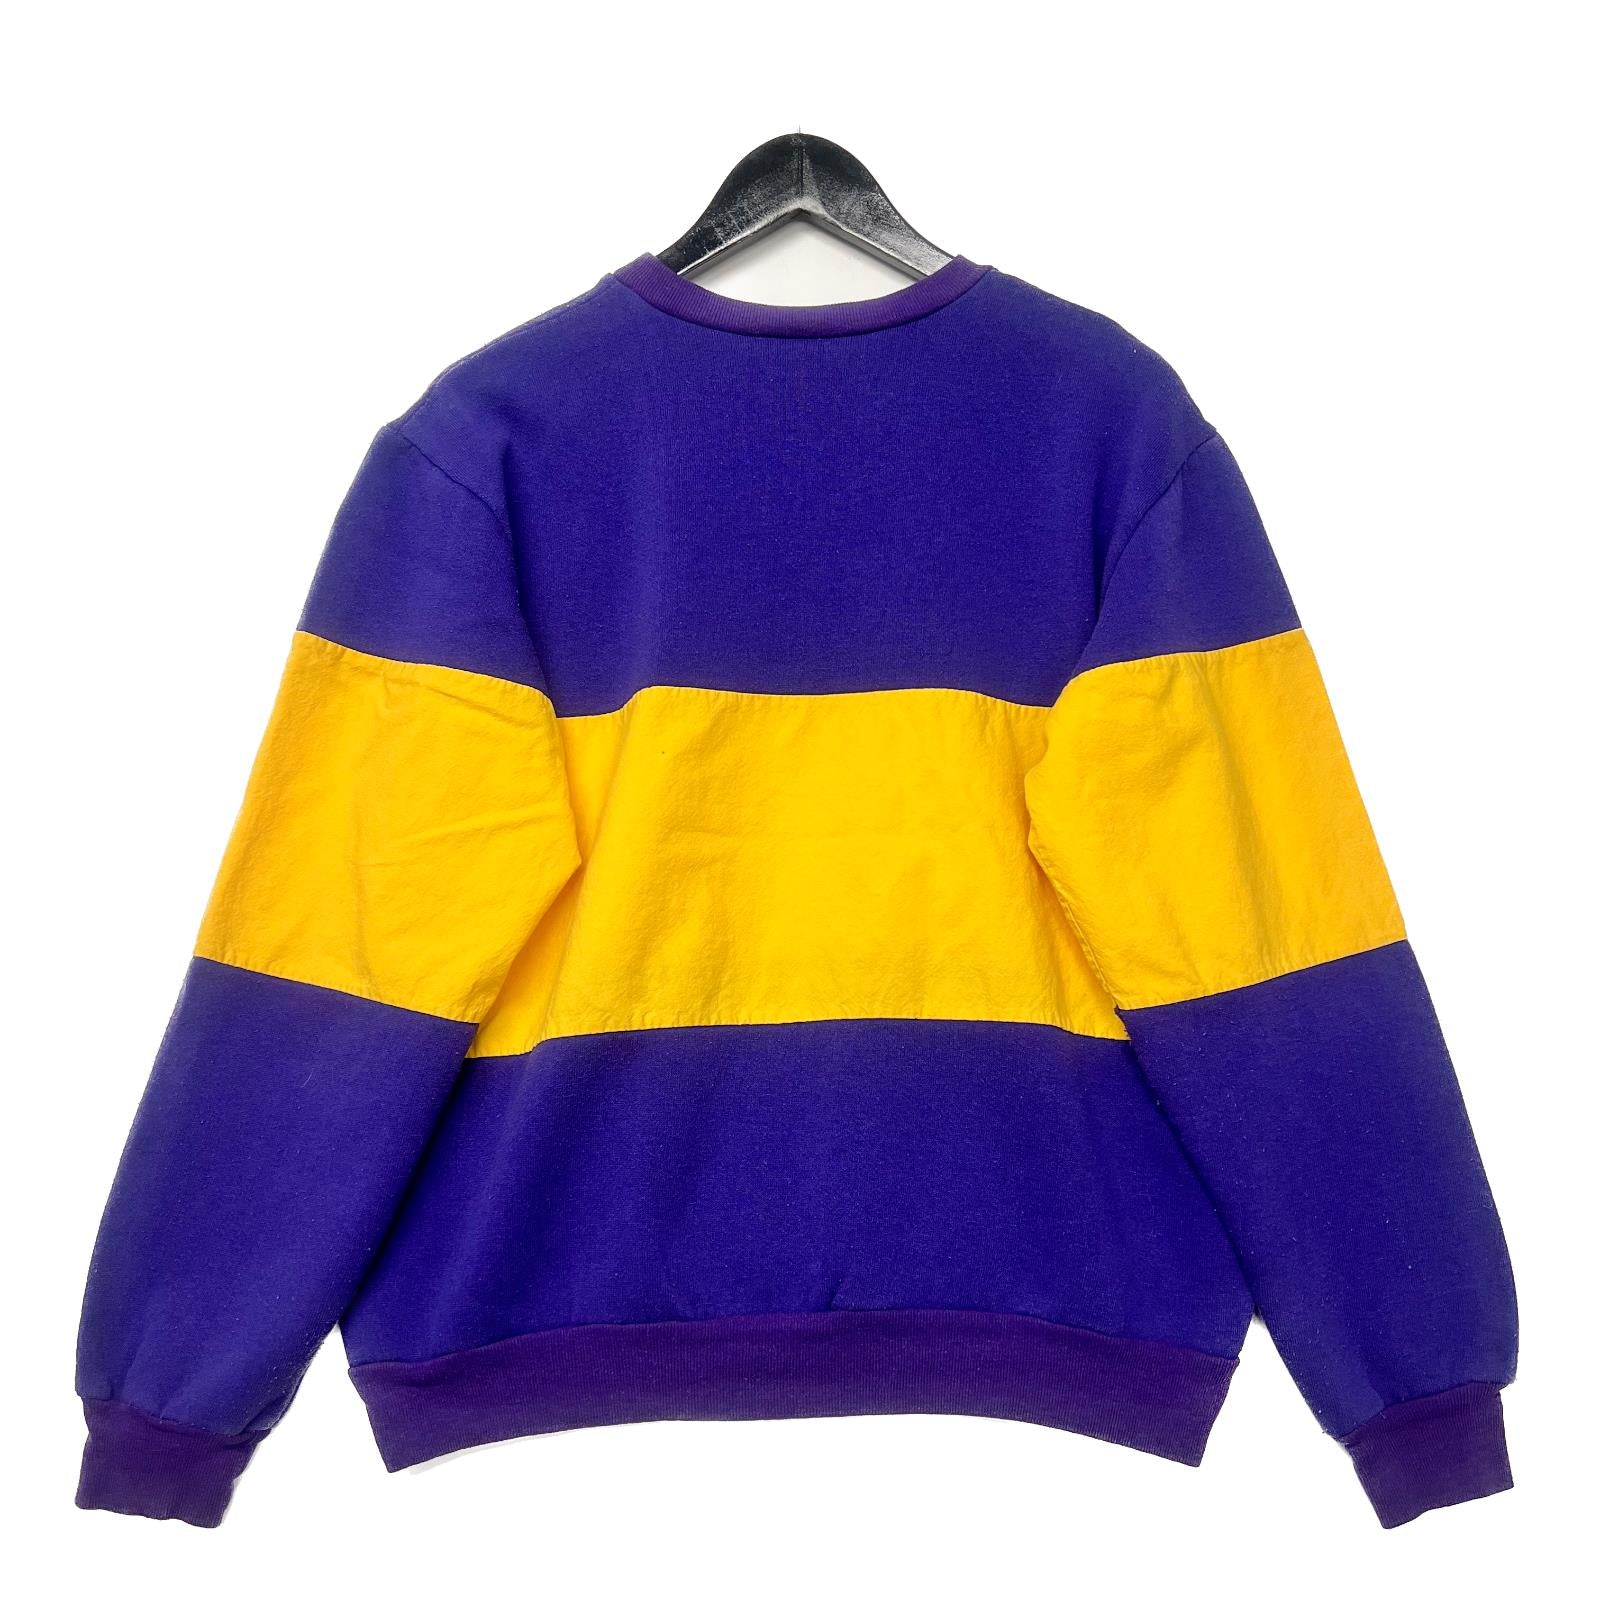 Vintage 90s NFL Minnesota Vikings Purple Sweatshirt Size M Nutmeg